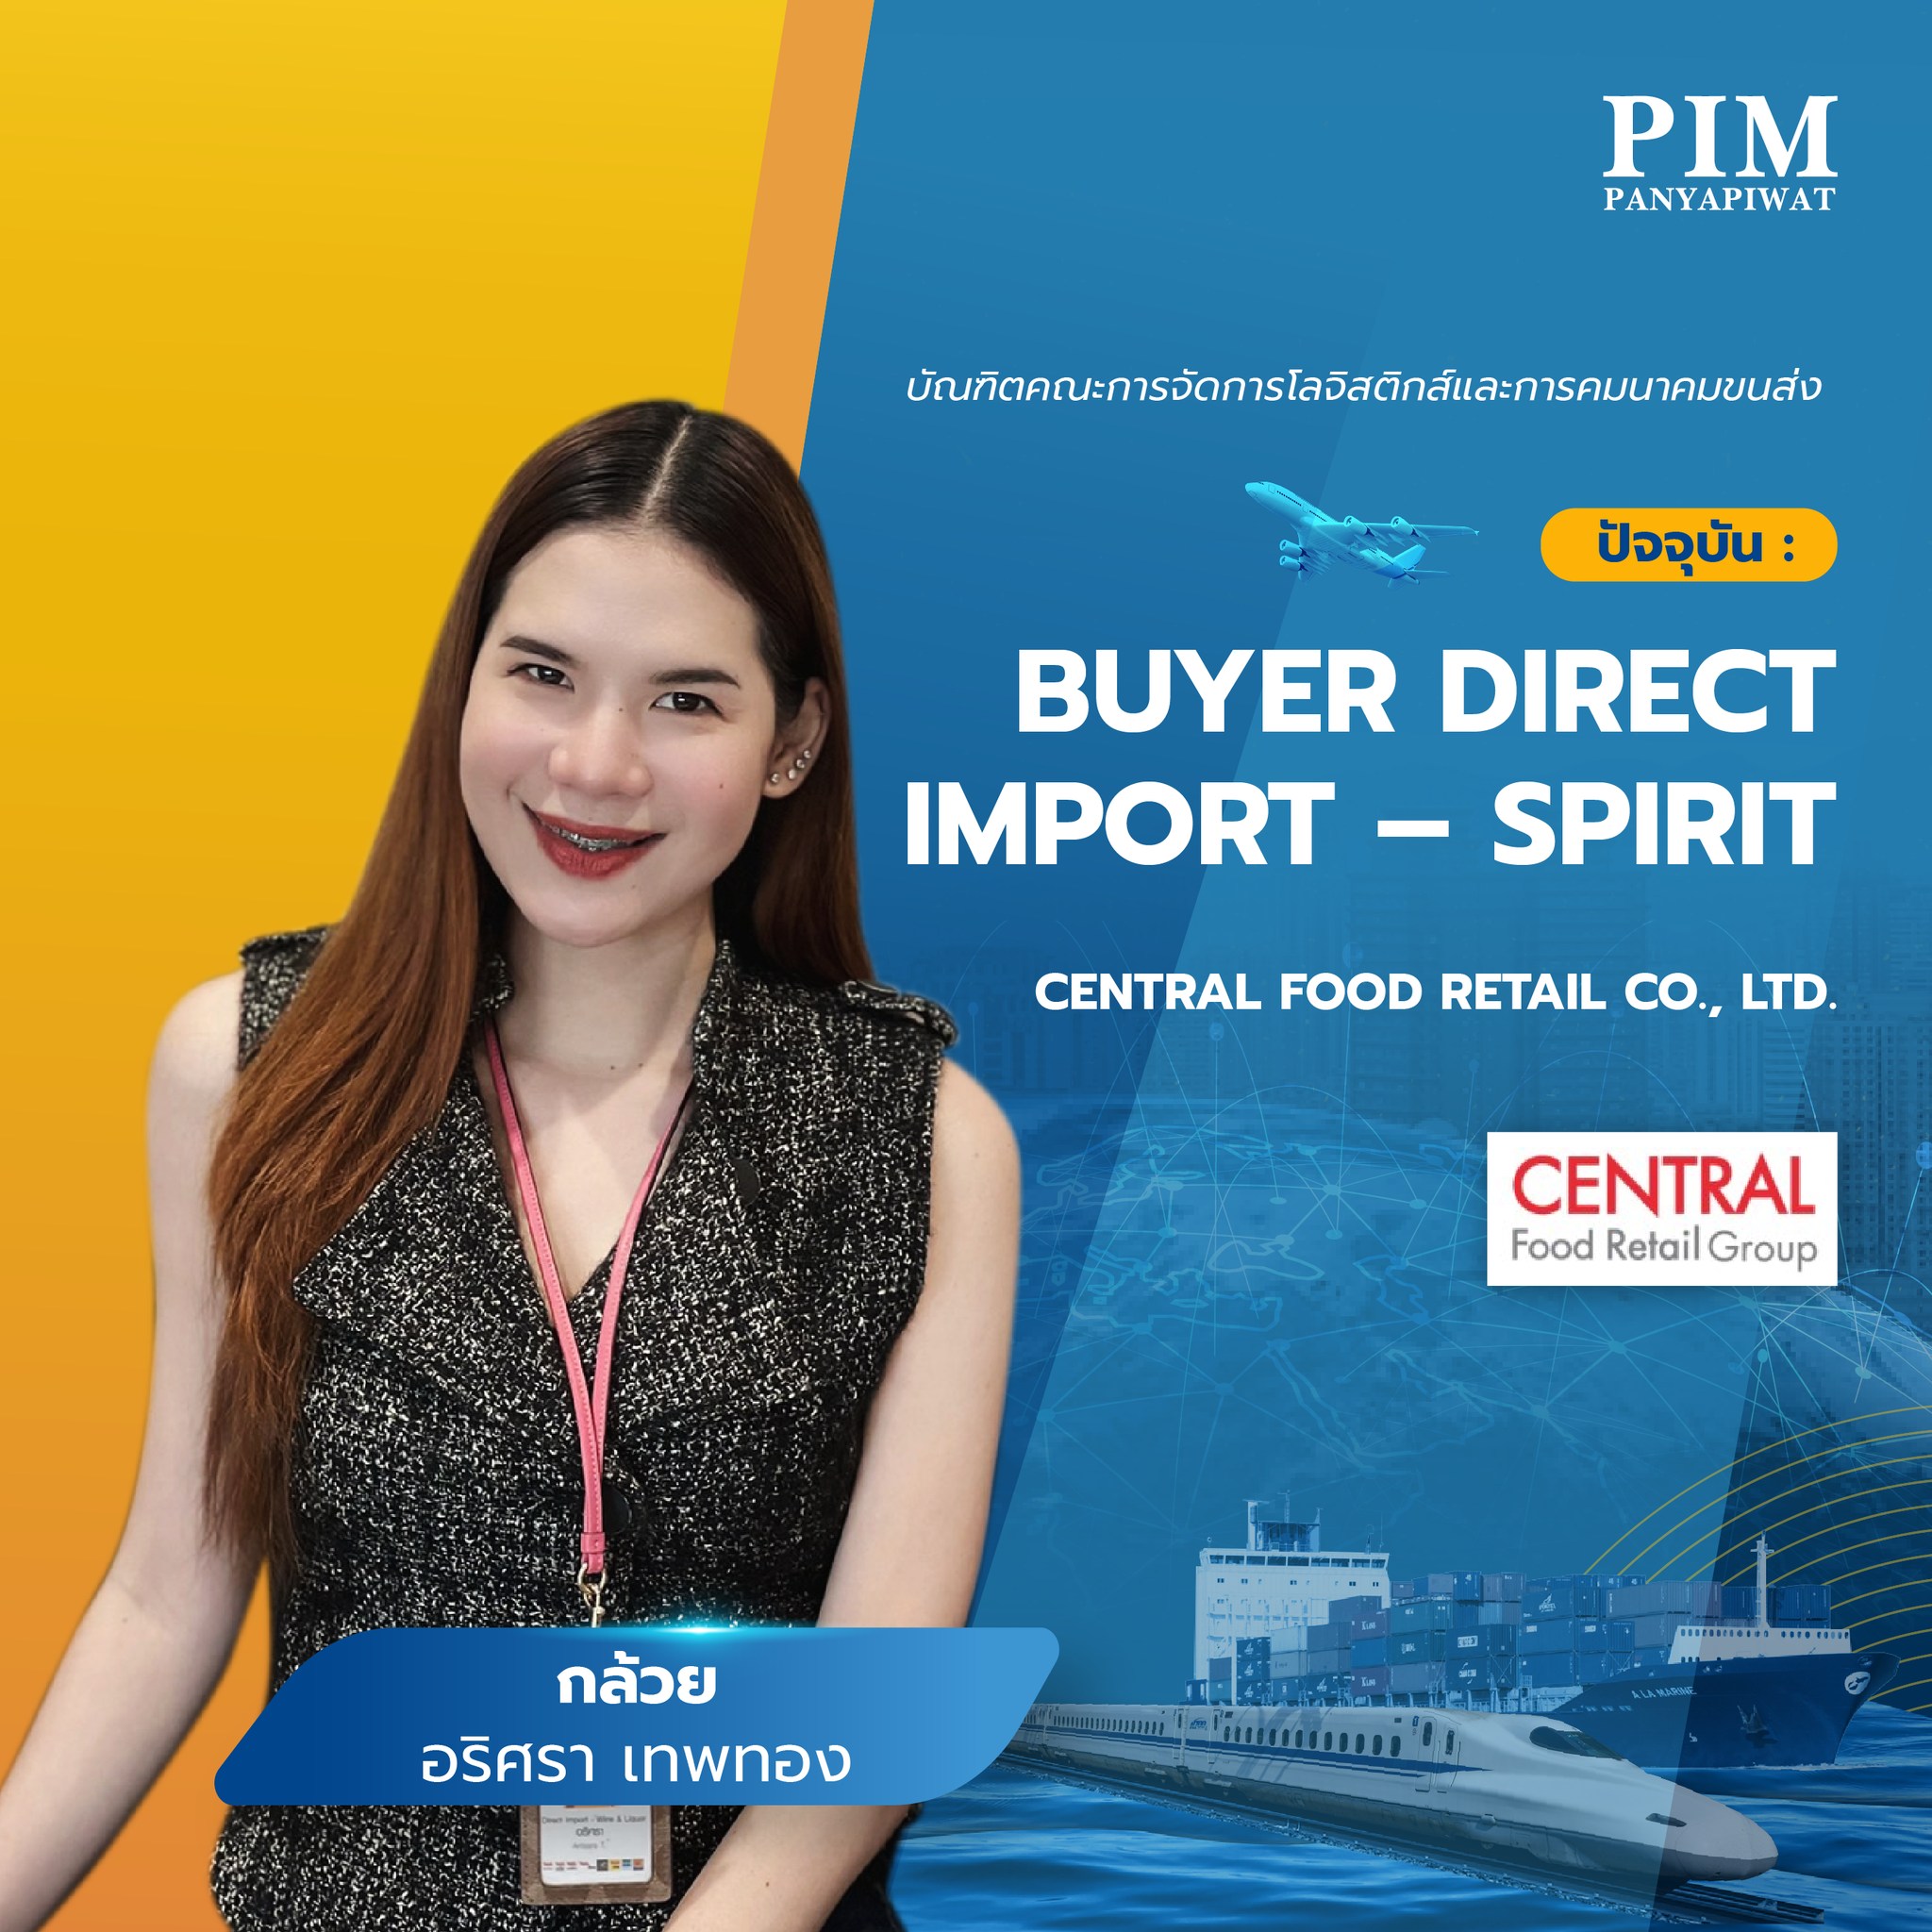 กล้วย - อริศรา เทพทอง บัณฑิตคณะการจัดการโลจิสติกส์และการคมนาคมขนส่ง ปัจจุบัน : Buyer Direct Import – Spirit, Central Food Retail Co., Ltd.